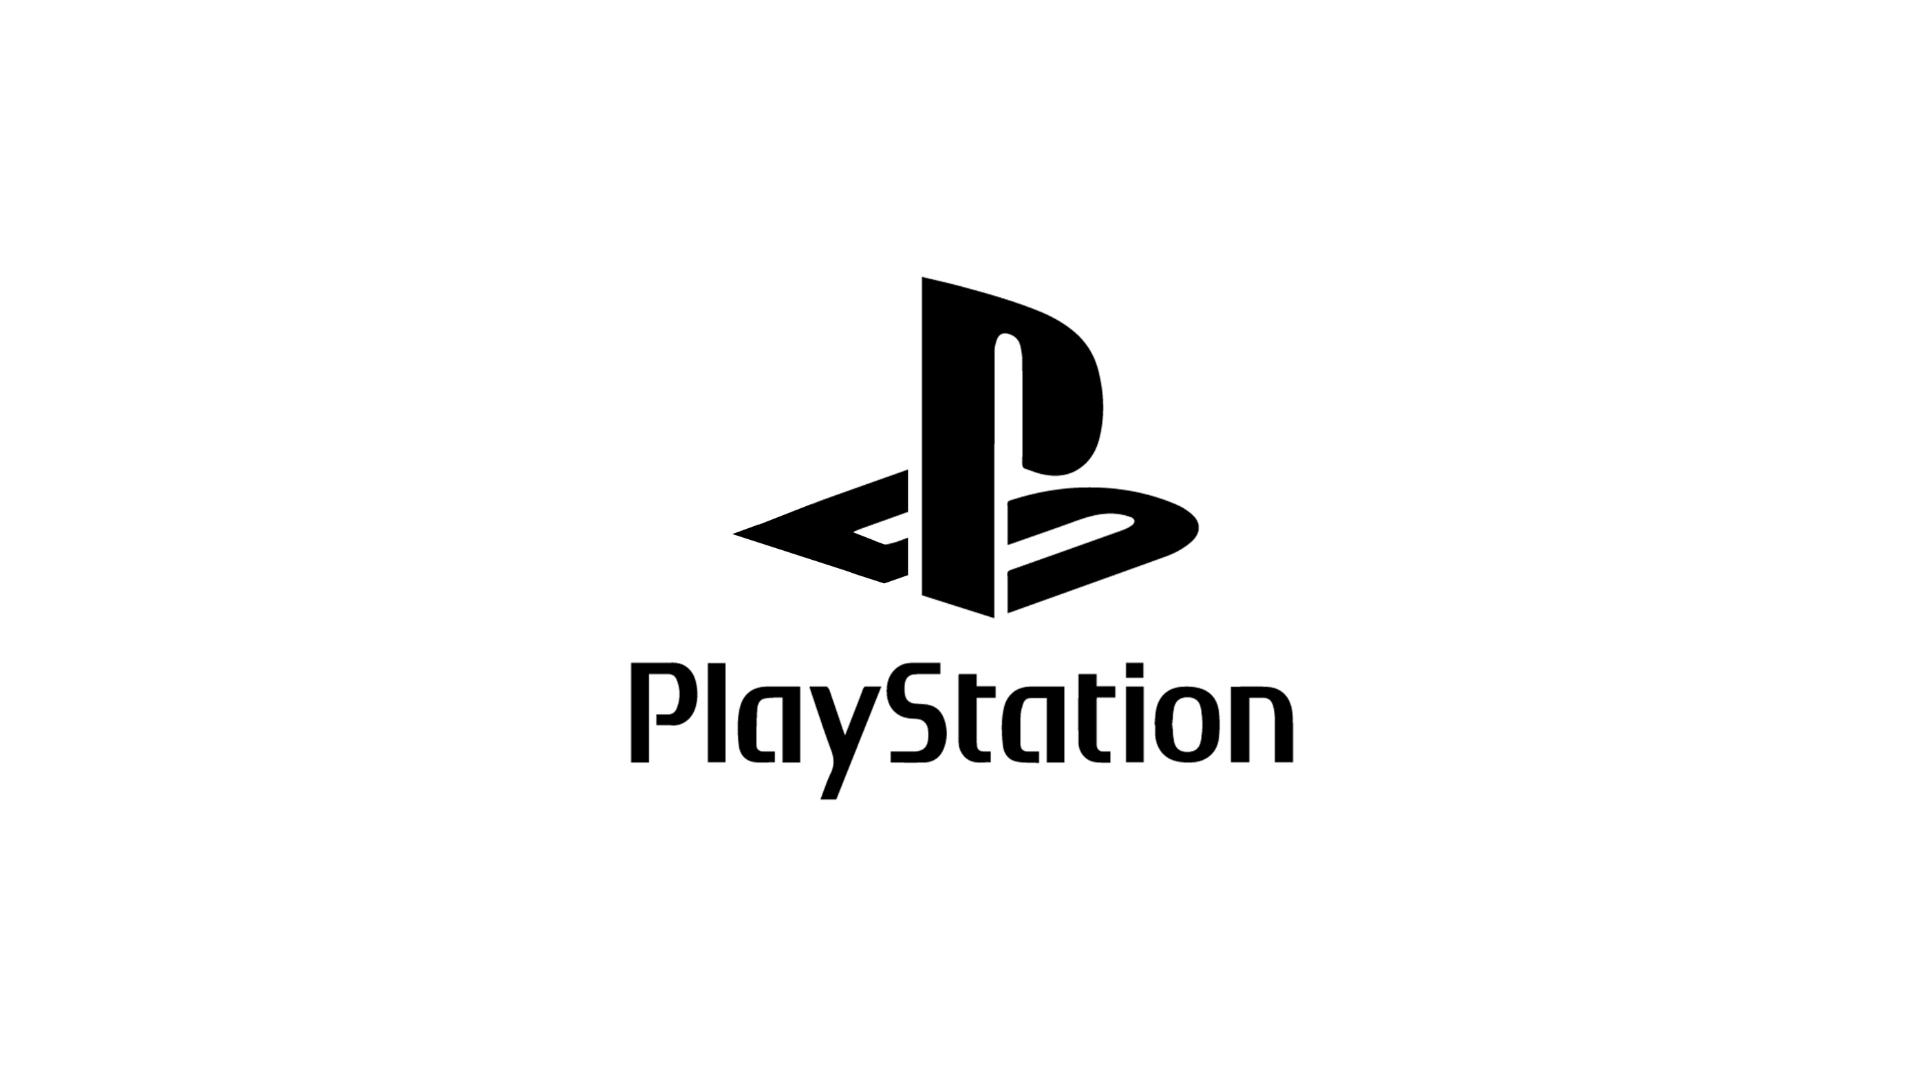 Playstation logo HD free Ps4 logo, Playstation symbols